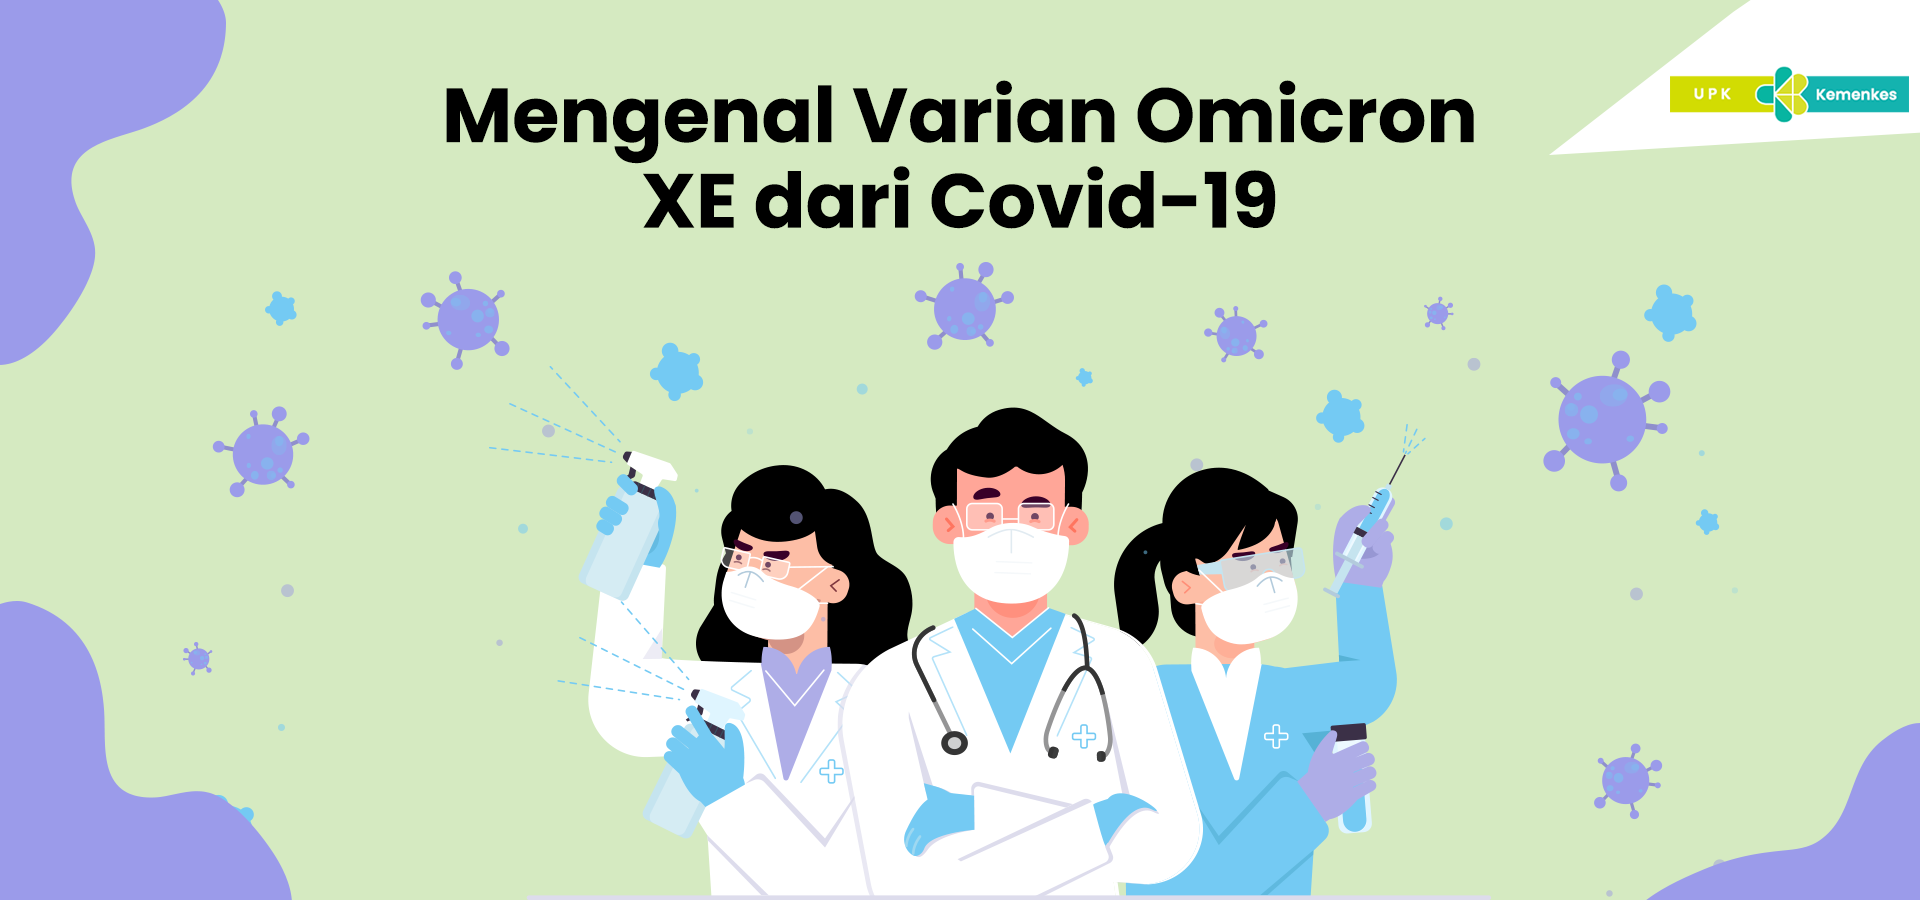 Mengenal Varian Omicron XE dari Covid-19